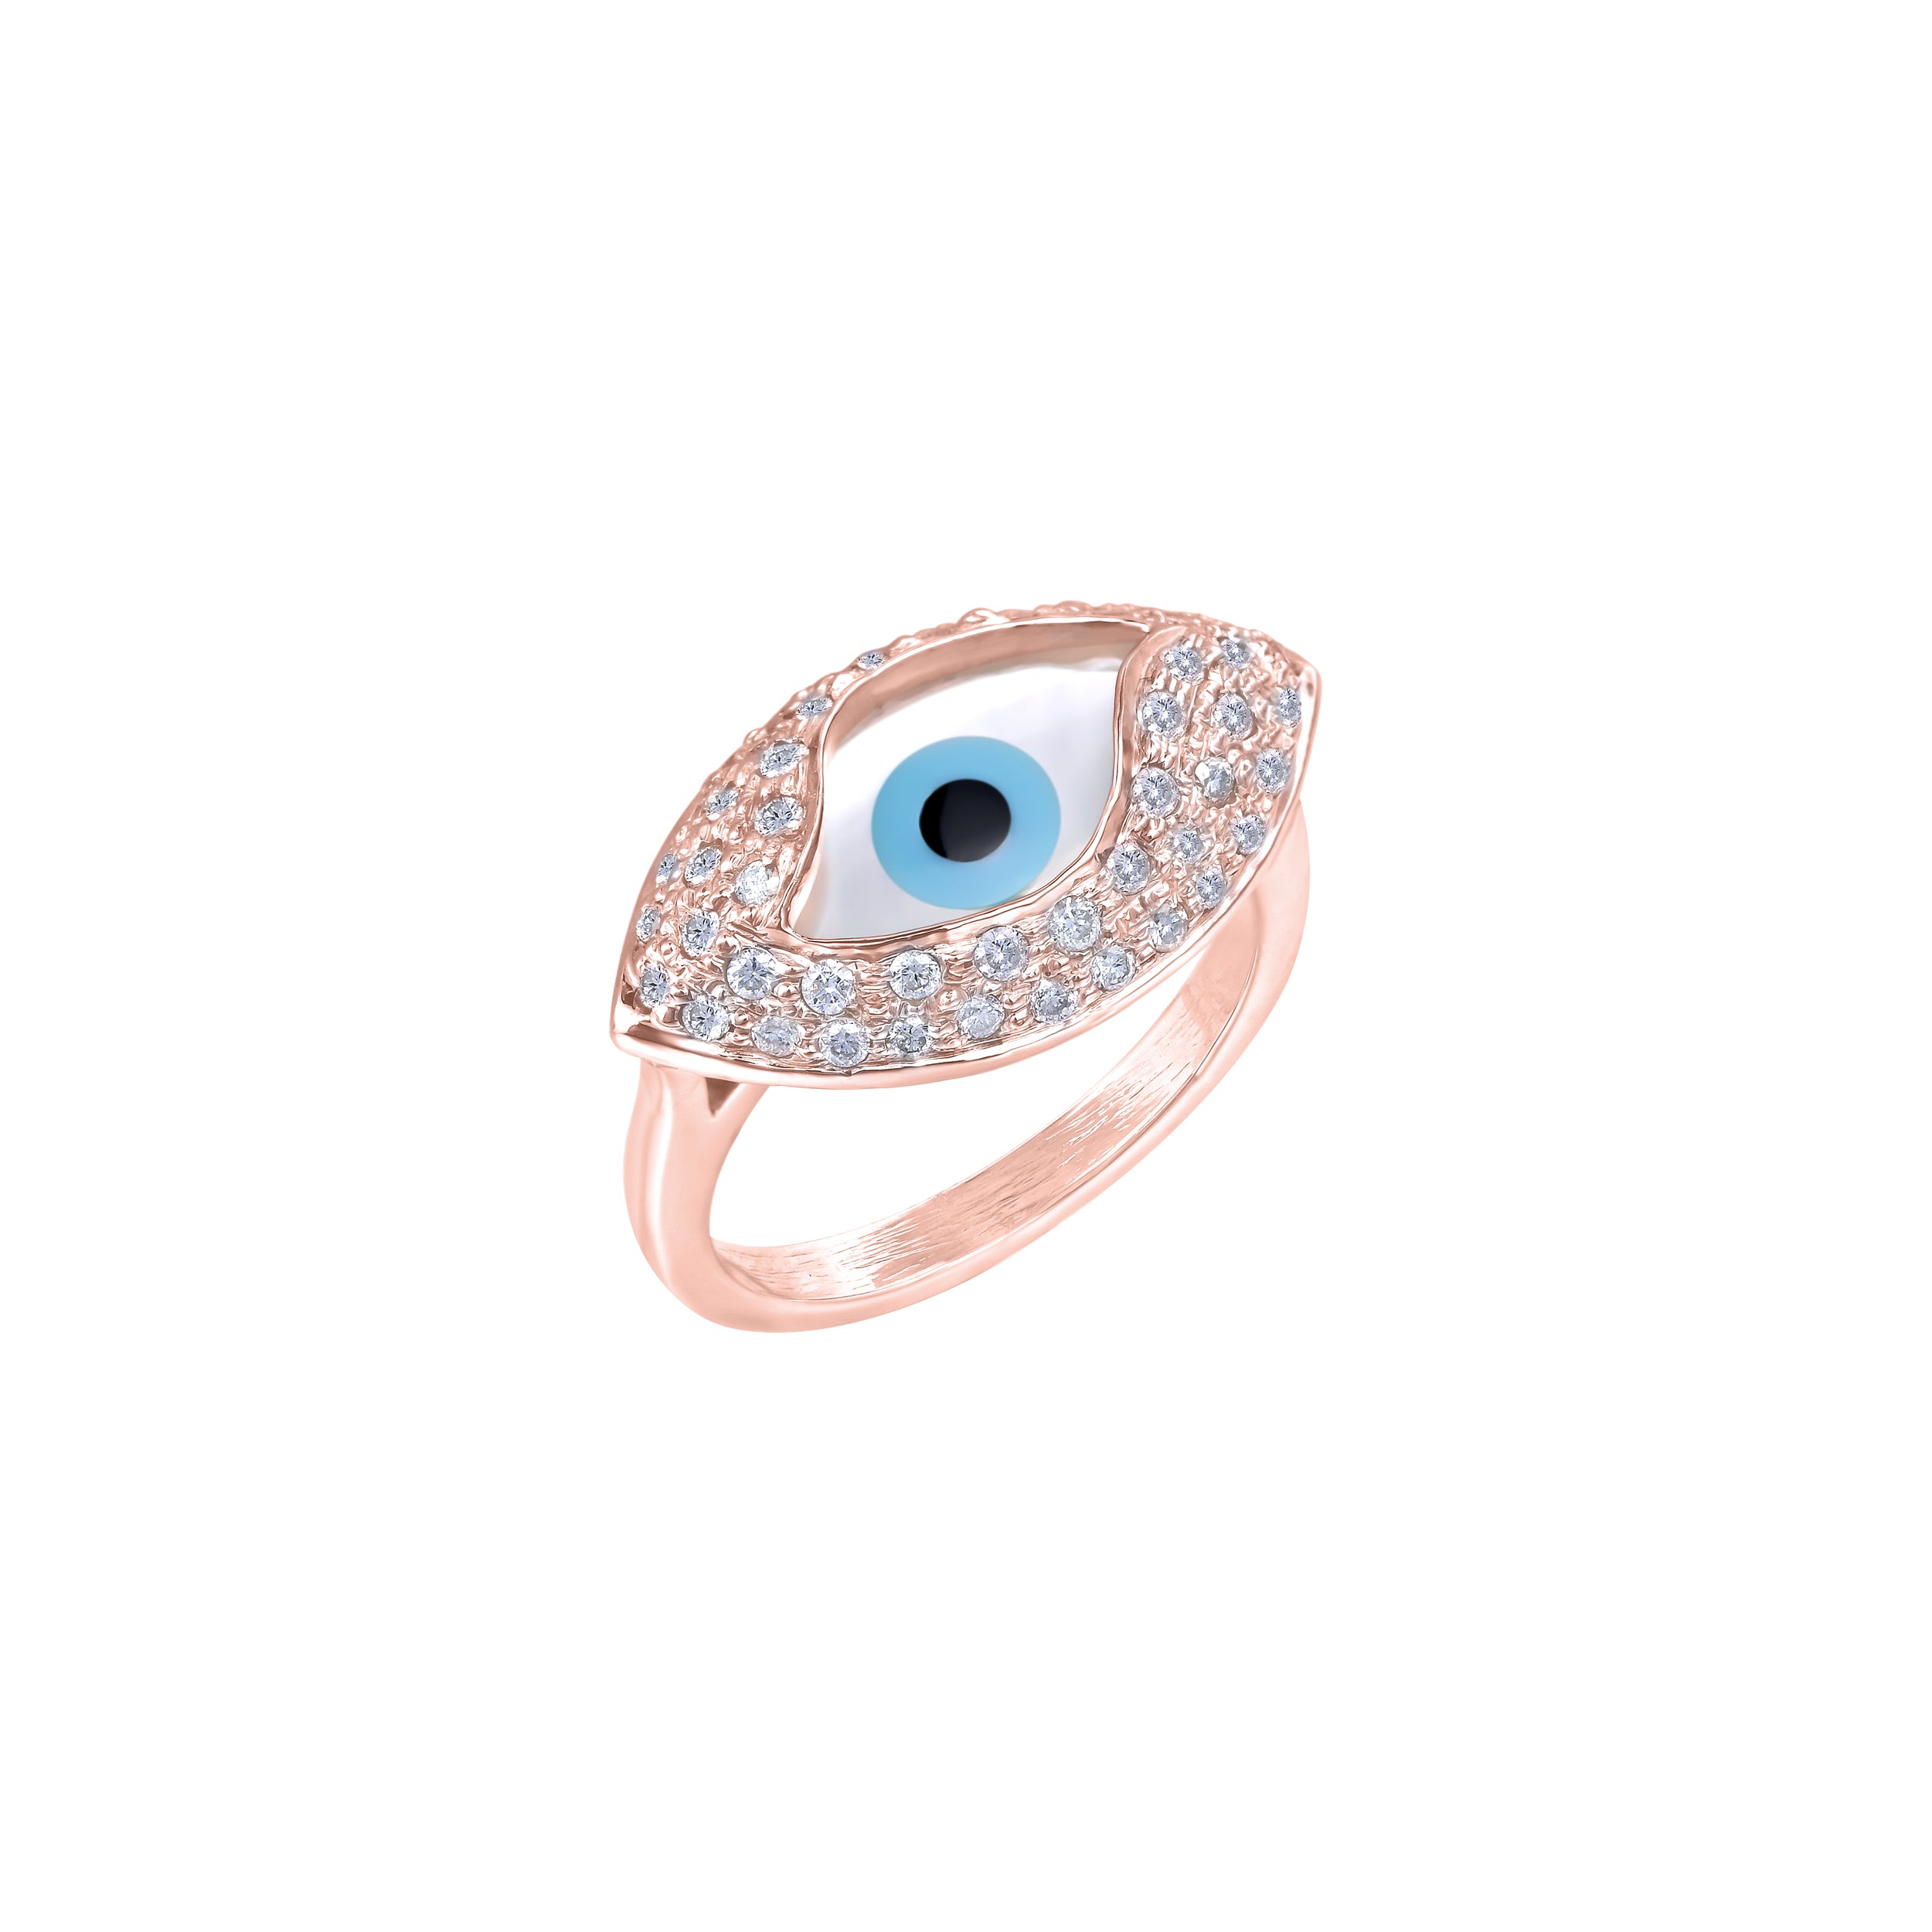 Mulgro Adjustable Evil Eye Ring Rose Gold Plated Ring Open India | Ubuy